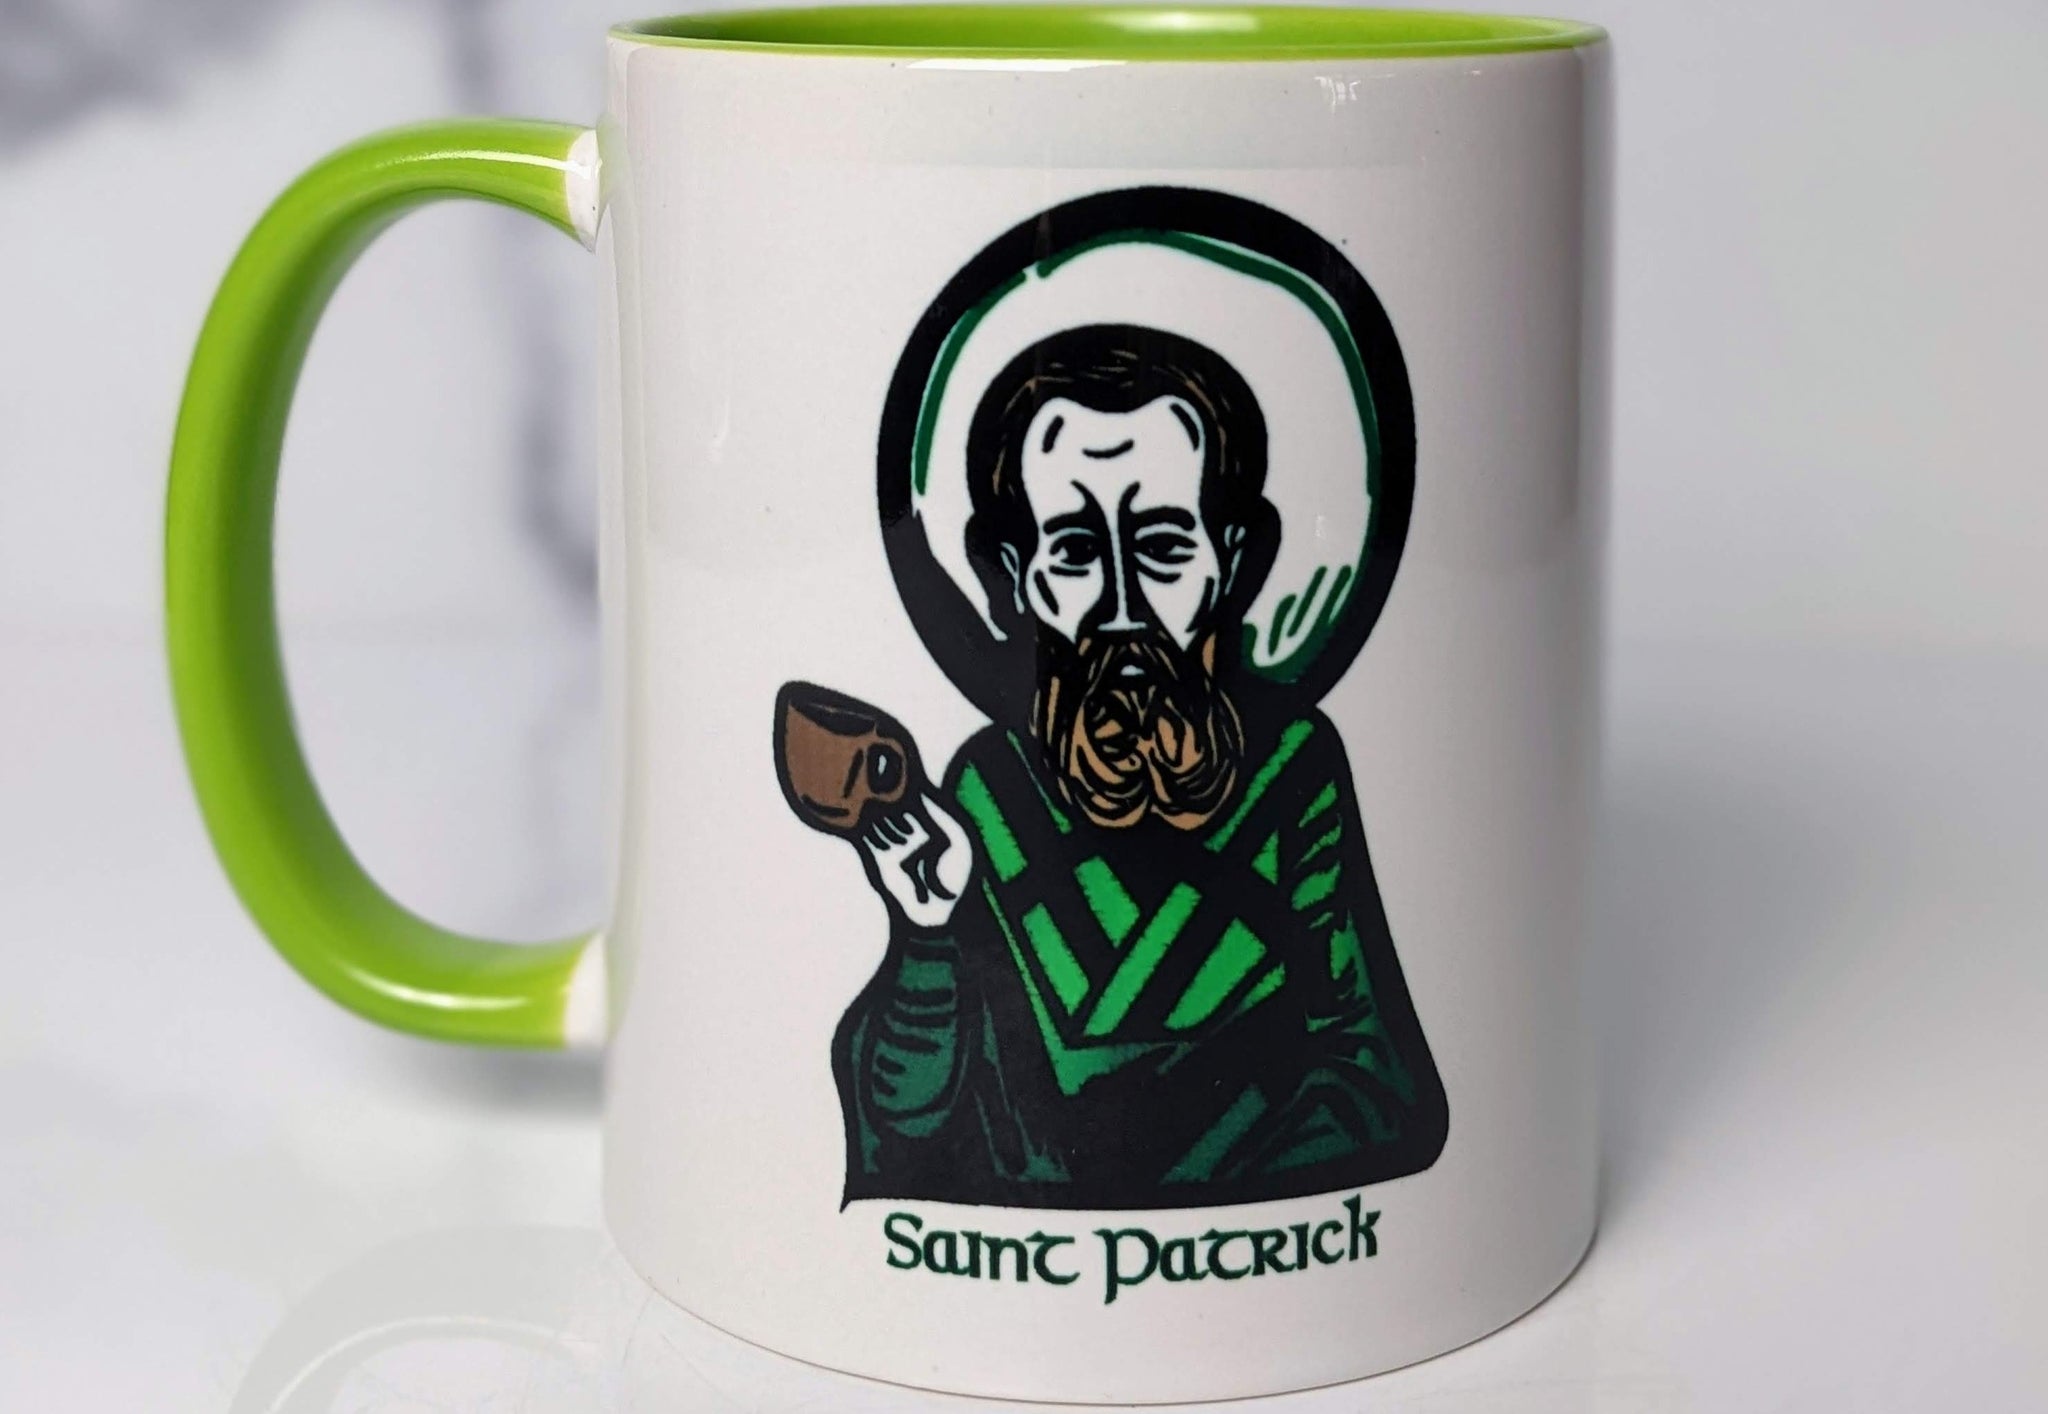 The Saint Patrick Prayer Mug - I Arise Today Prayer